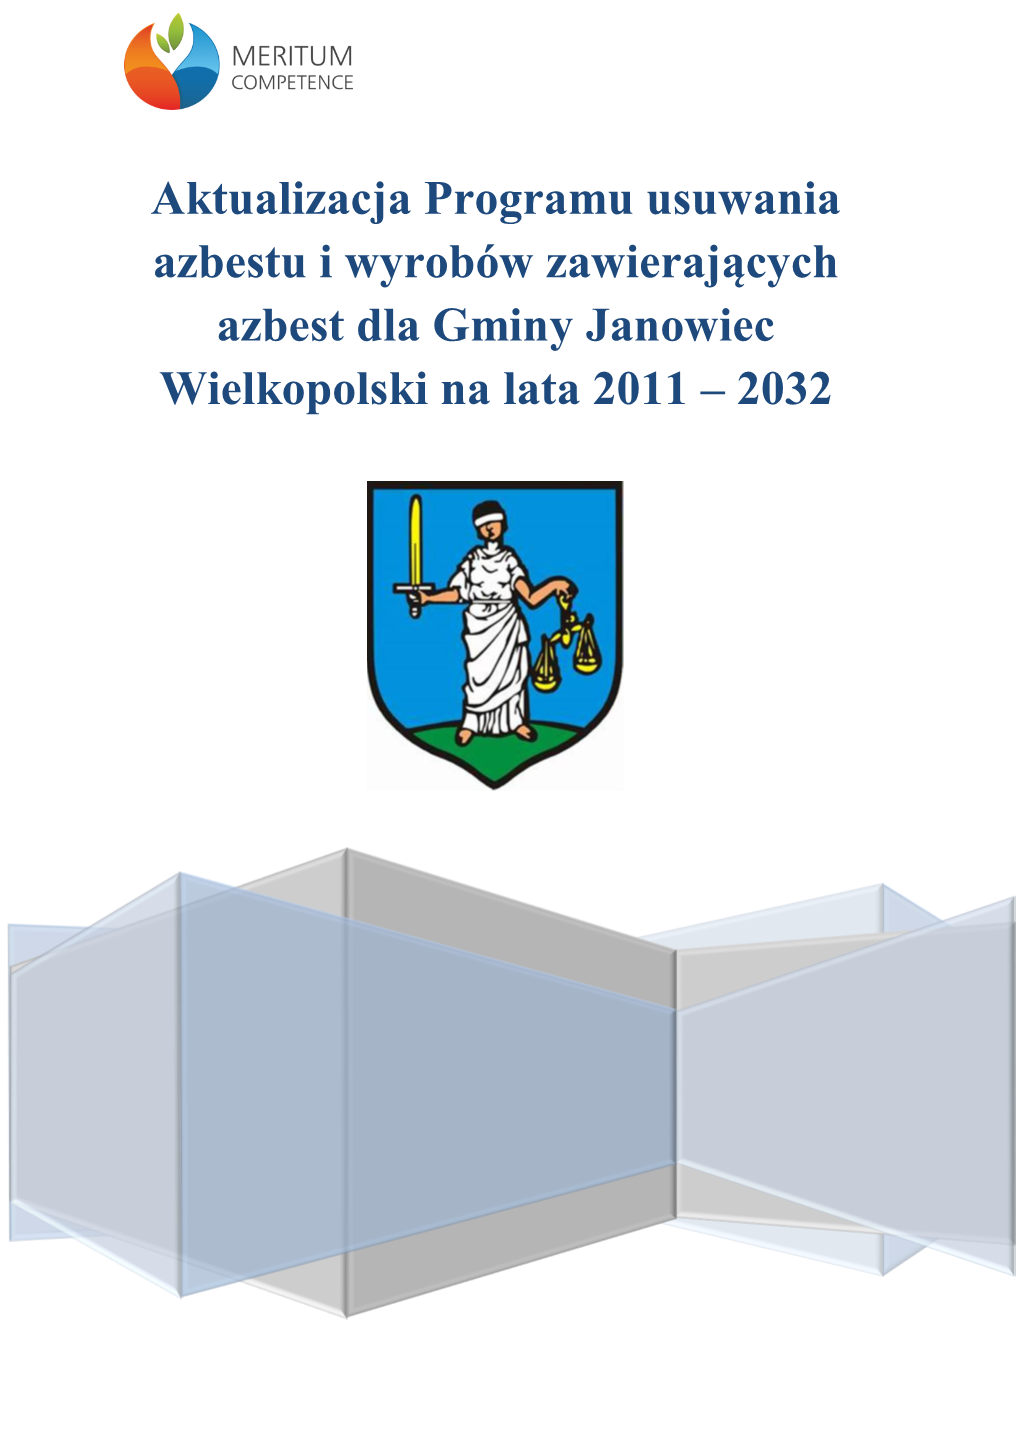 Aktualizacja Programu Usuwania Azbestu I Wyrobów Zawierających Azbest Dla Gminy Janowiec Wielkopolski Na Lata 2011 – 2032